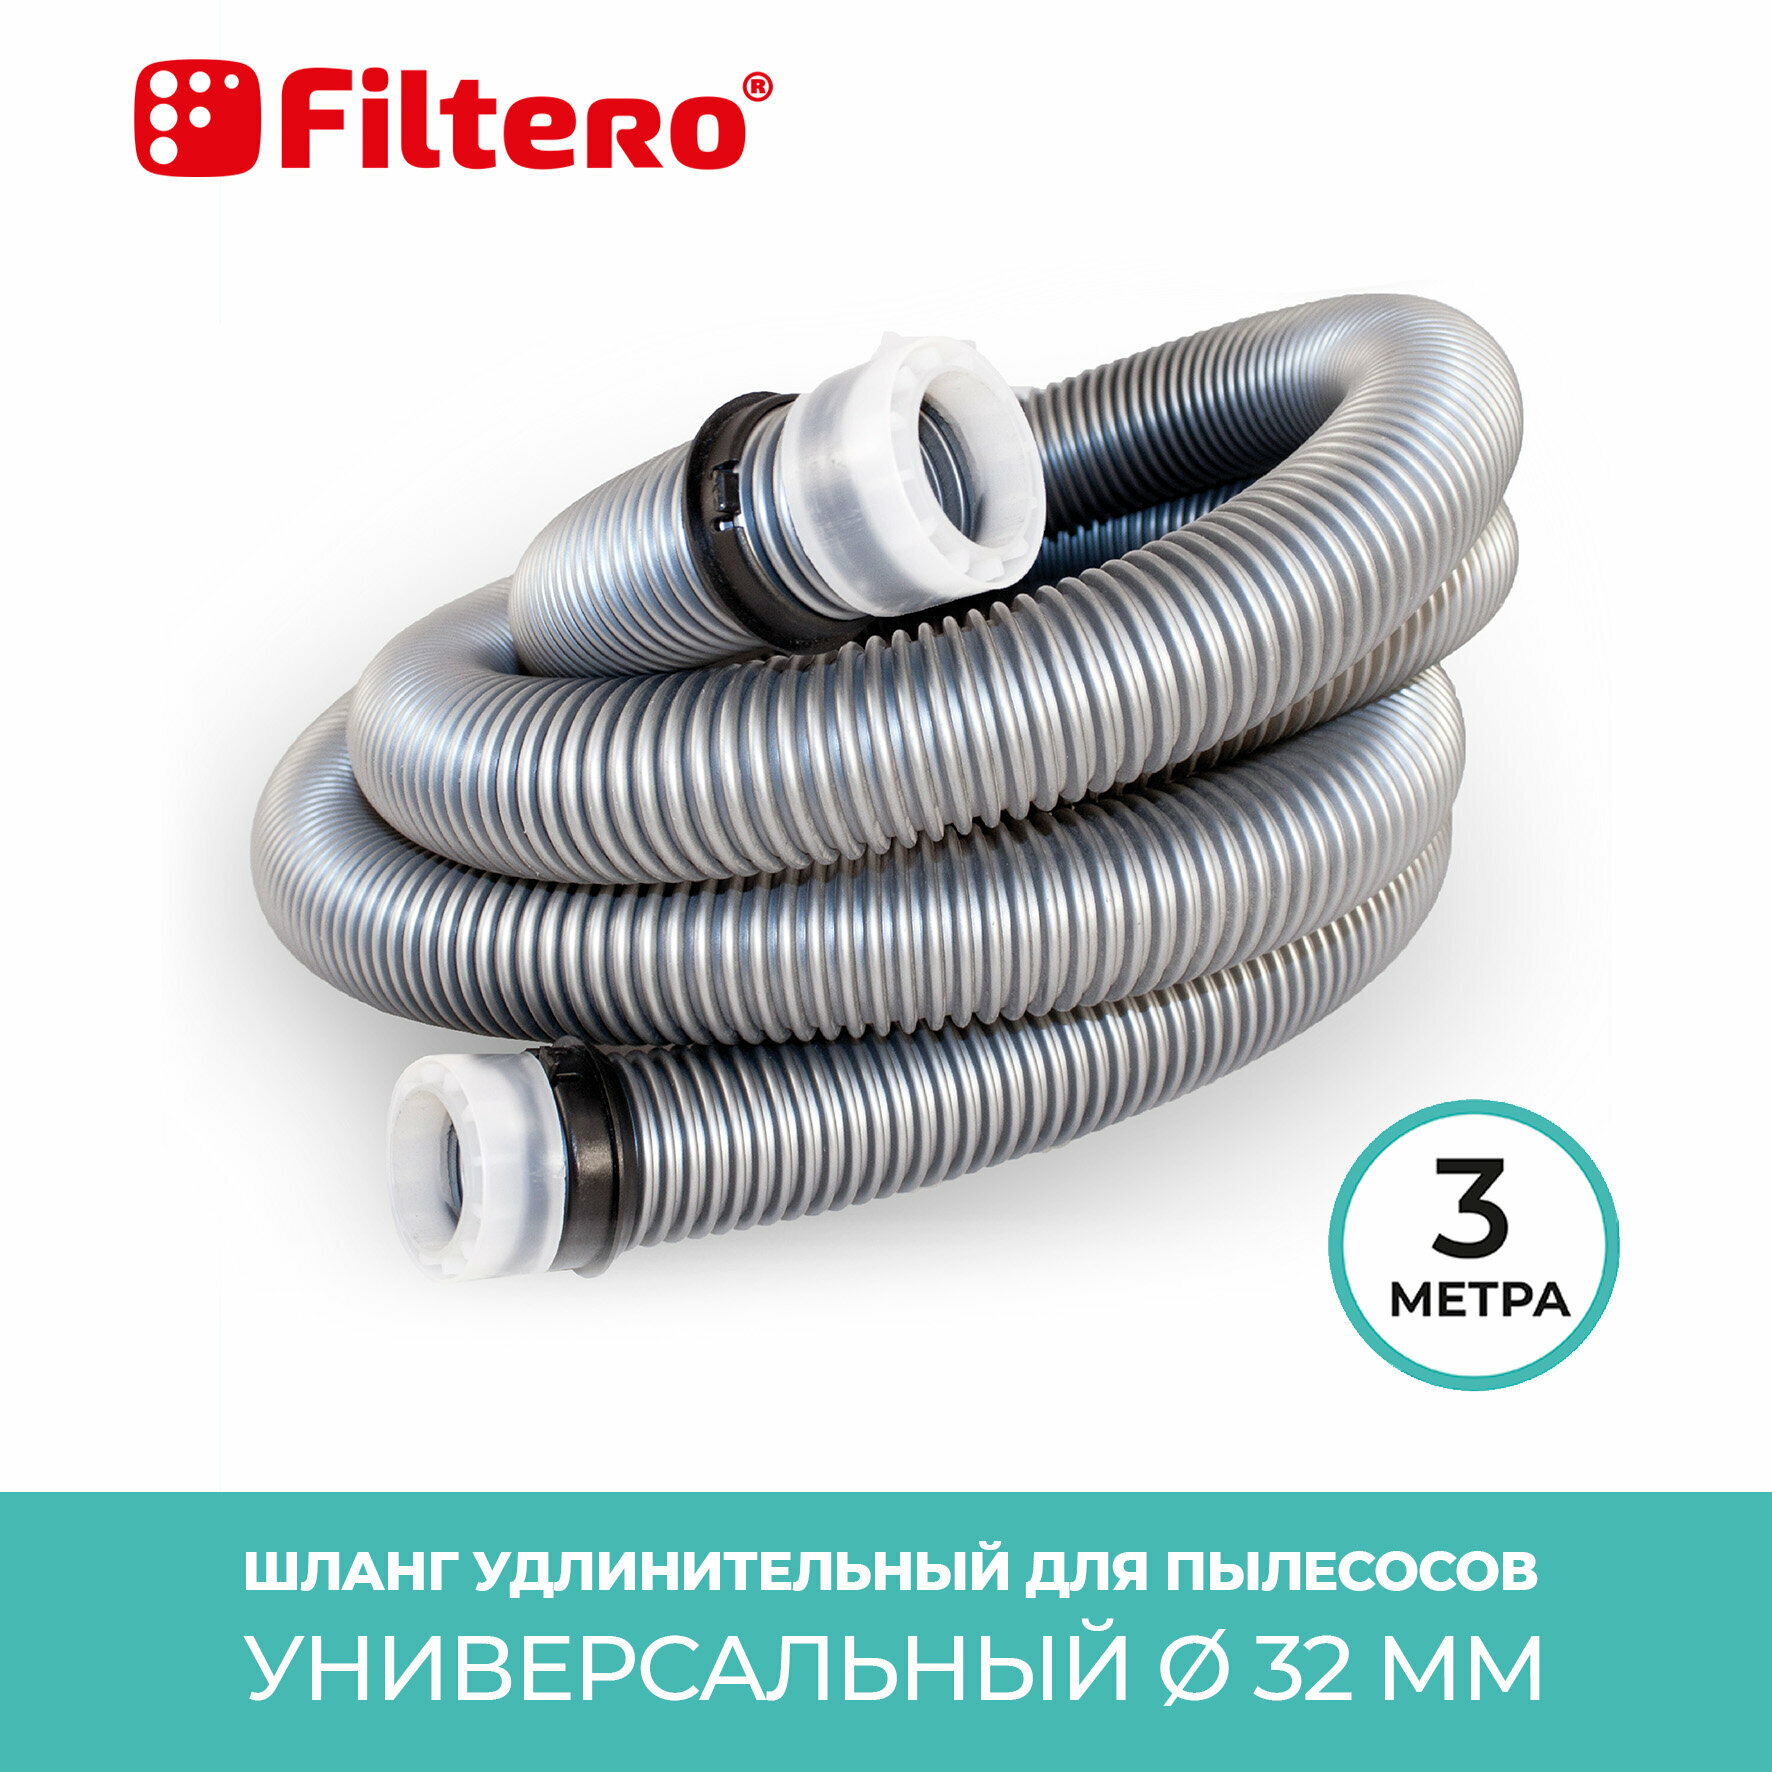 Filtero FTT 03 универсальный шланг для пылесосов, длина 3 метра